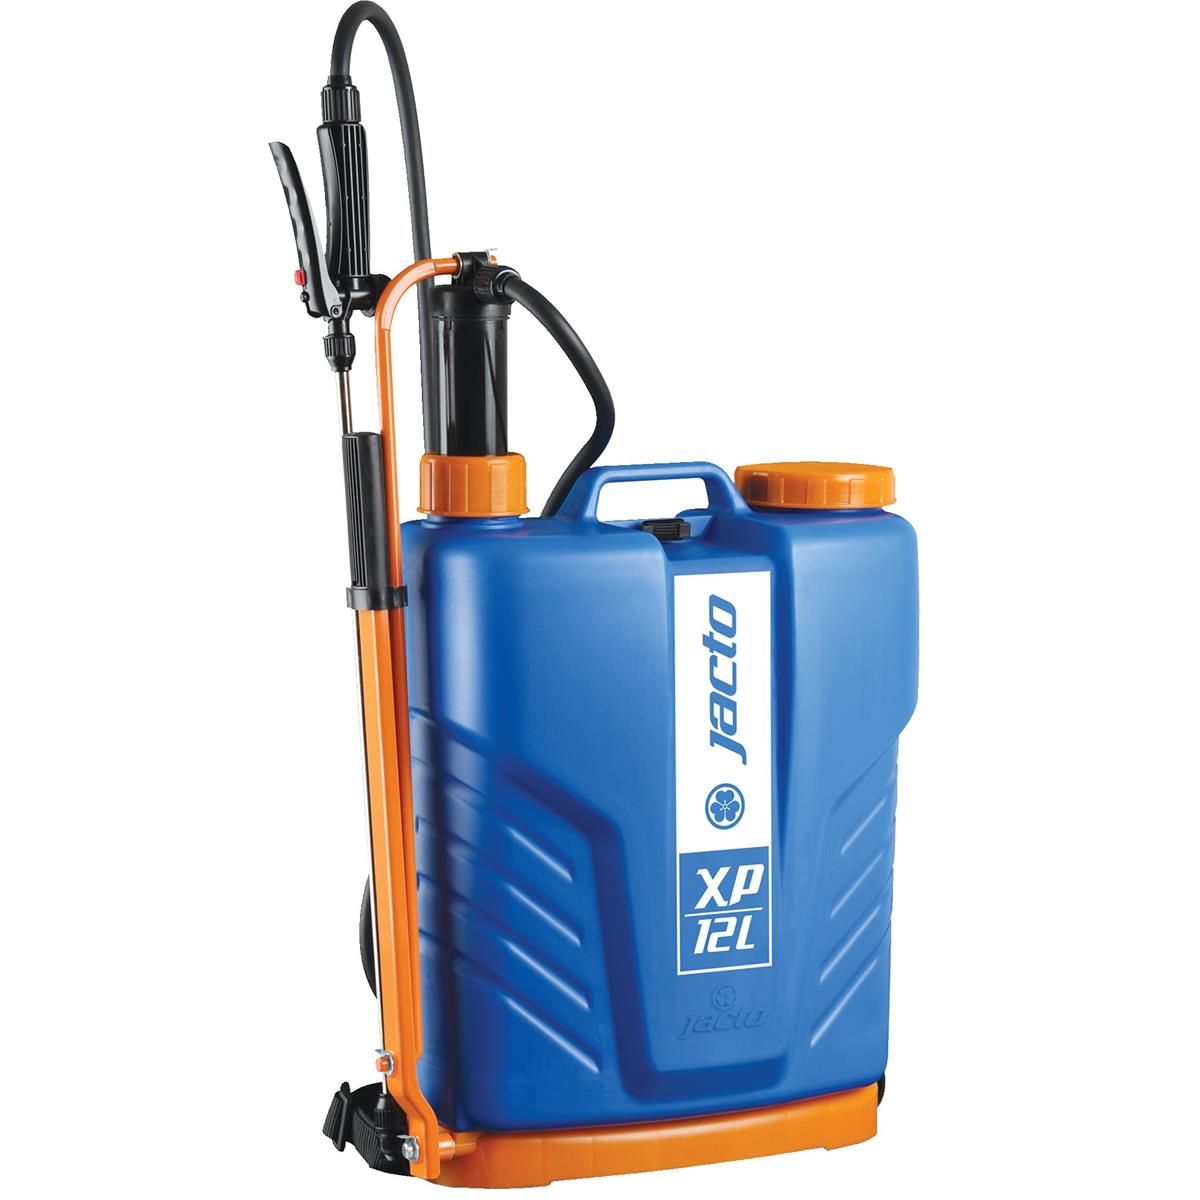 1210812 Xp16 4.1 Gal Manual Sprayer